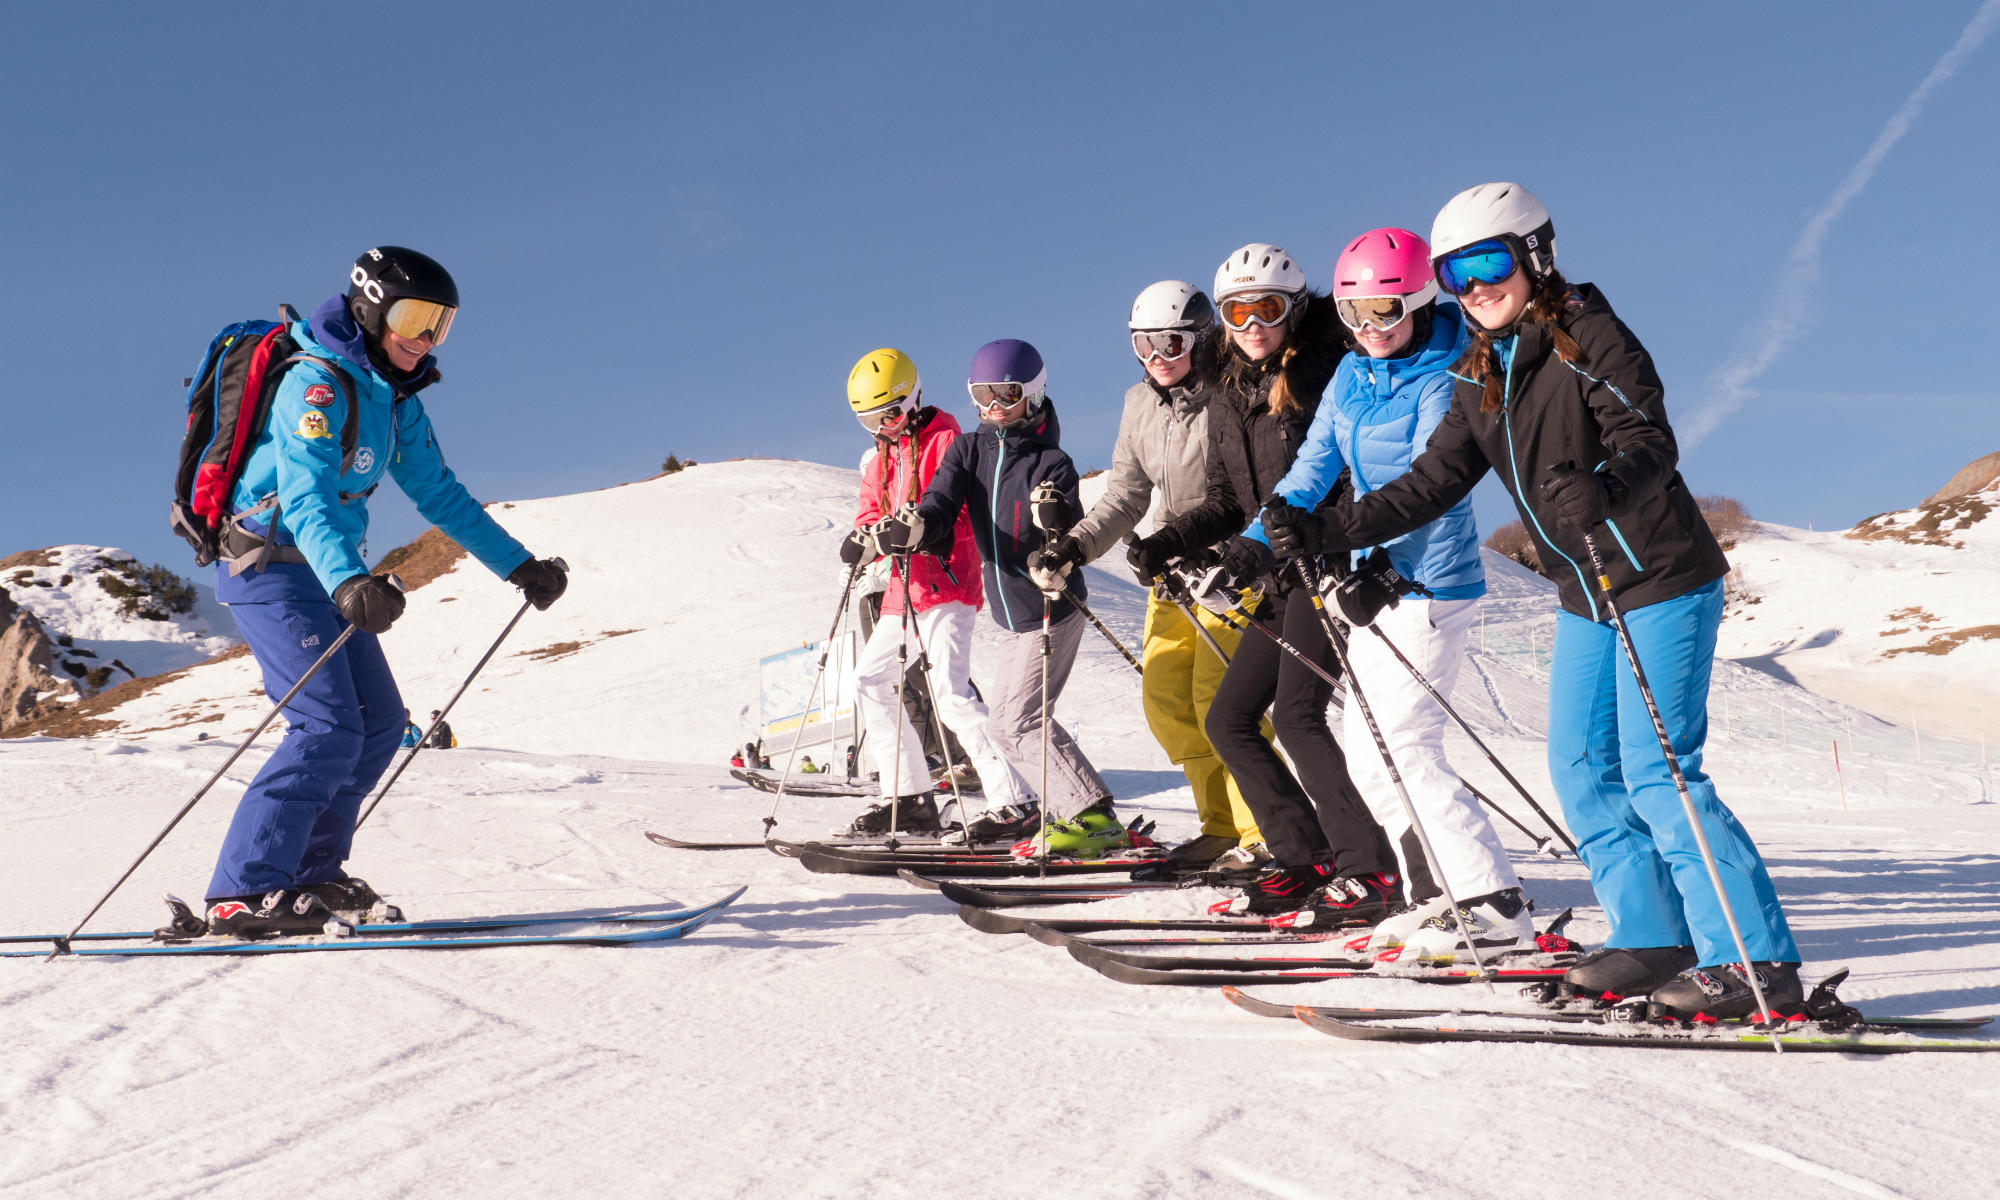 Een groep tieners op een zonnige piste tijdens het skiën.